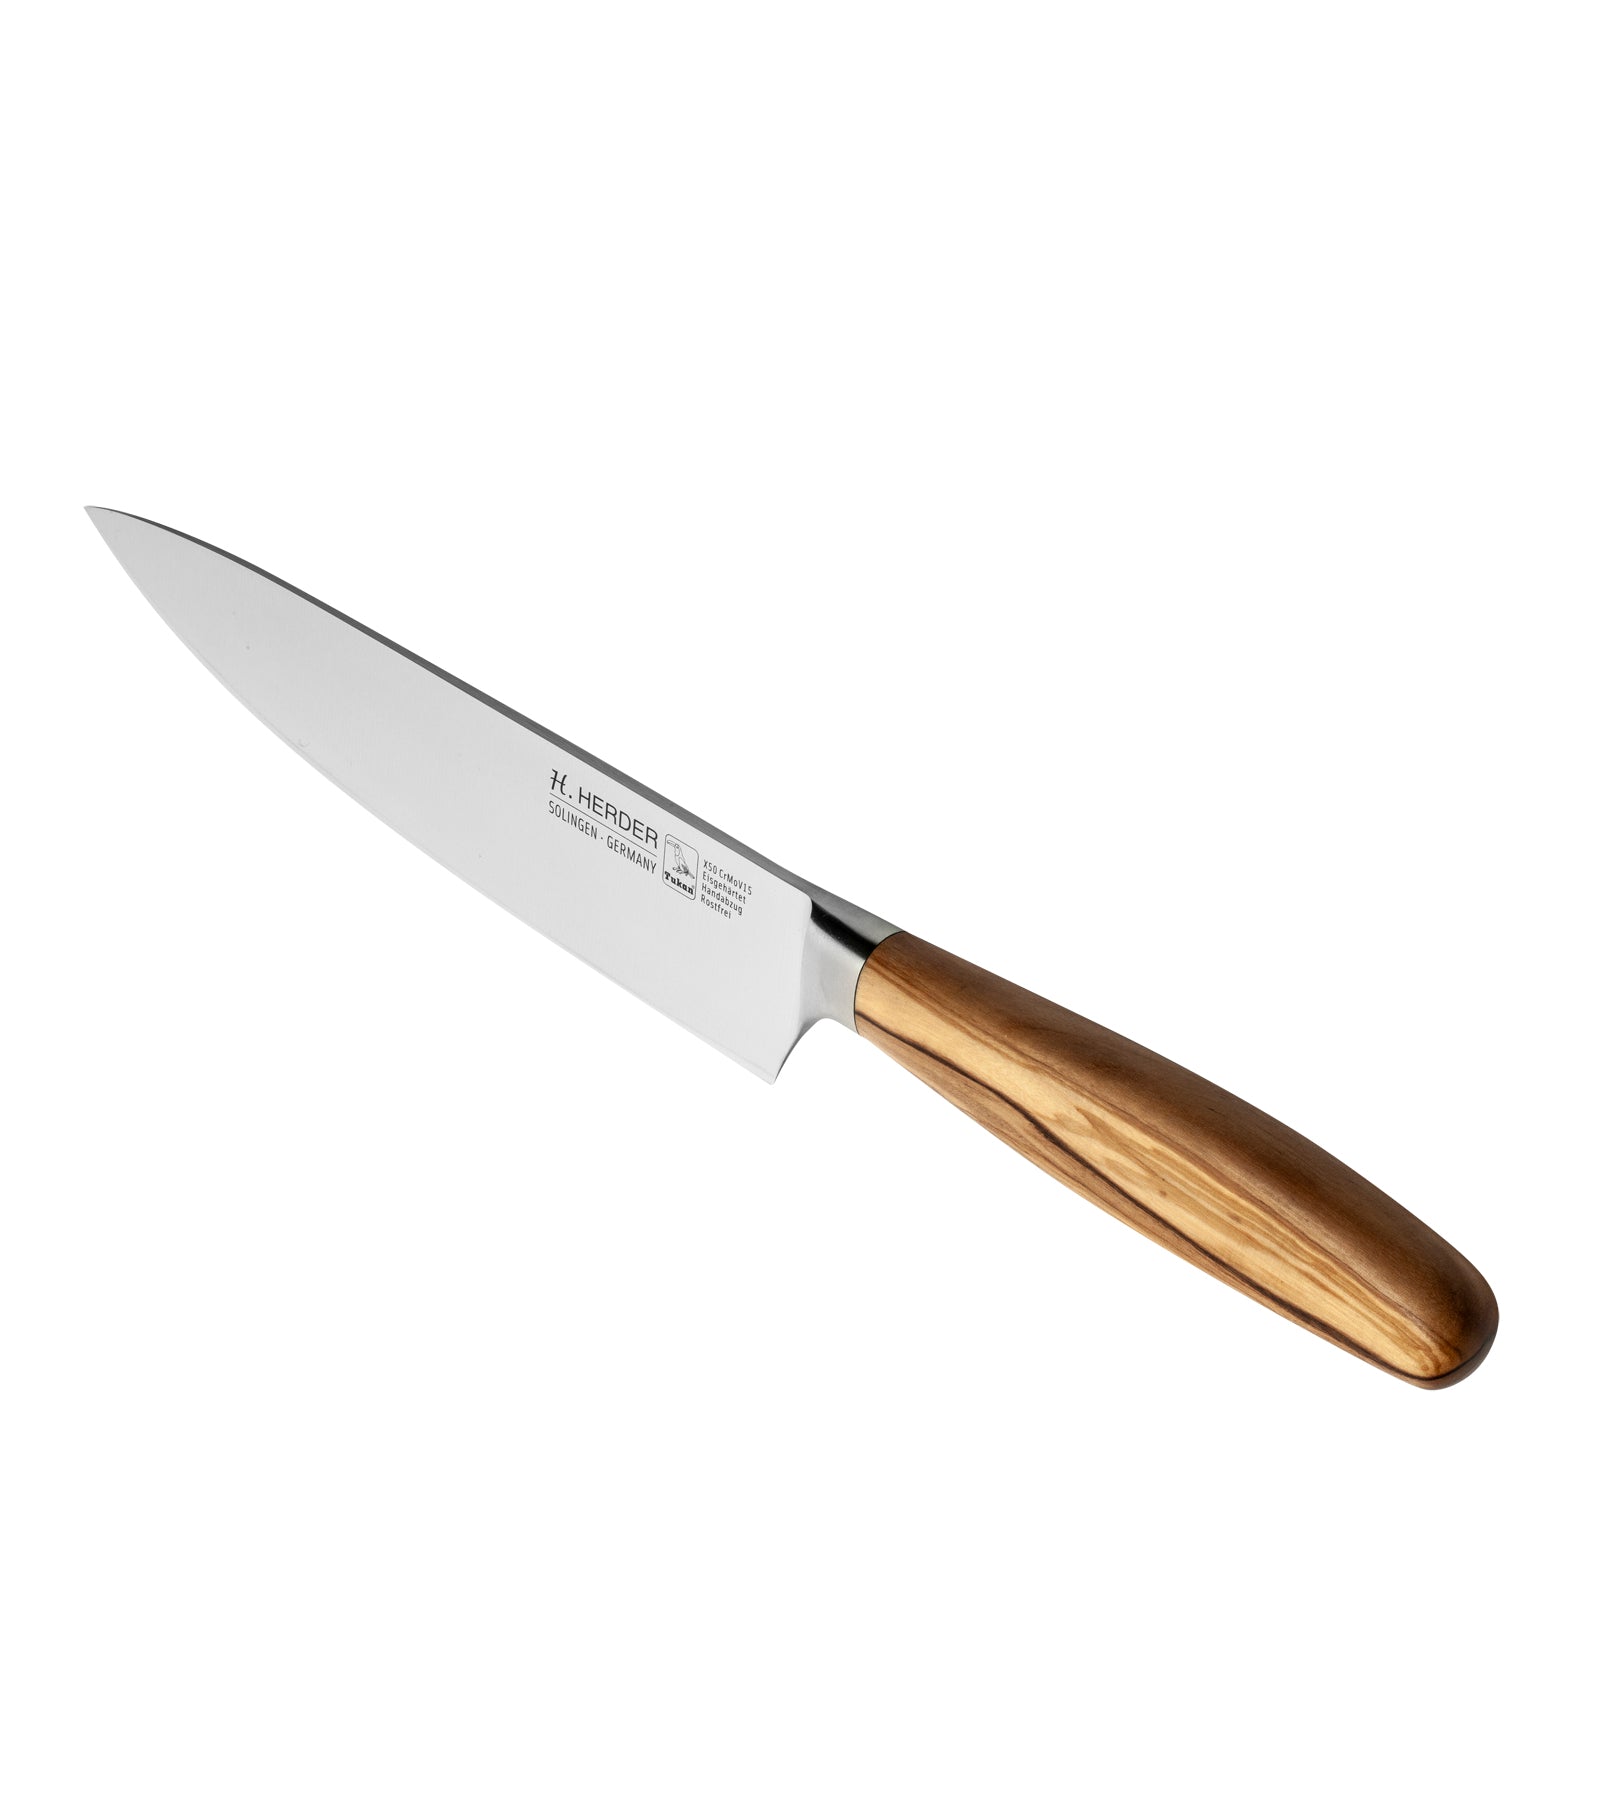 Cuchillo de cocinero Eterno, madera de olivo, longitud de la hoja 21cm, forjado